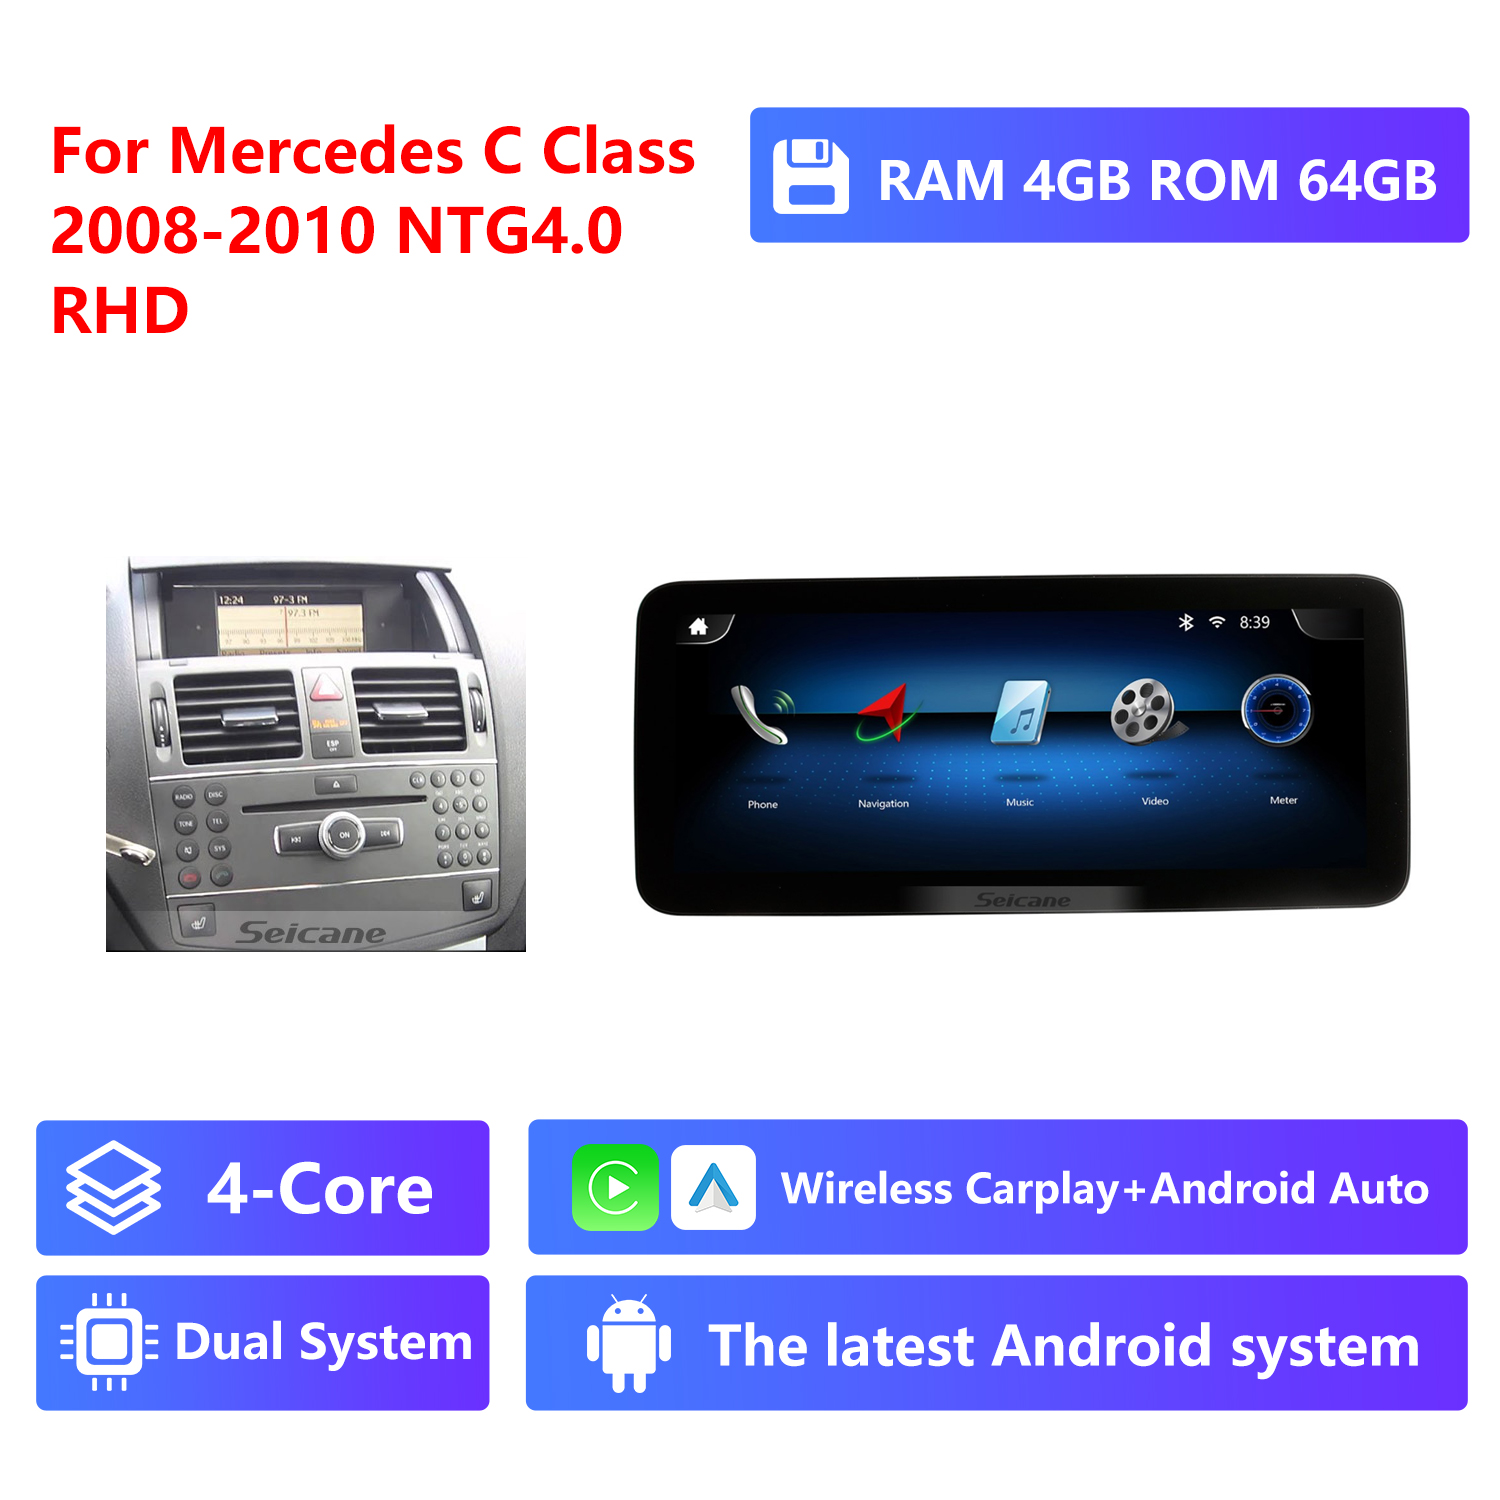 4-Core RAM 4G ROM 64G,RHD,NTG4.0